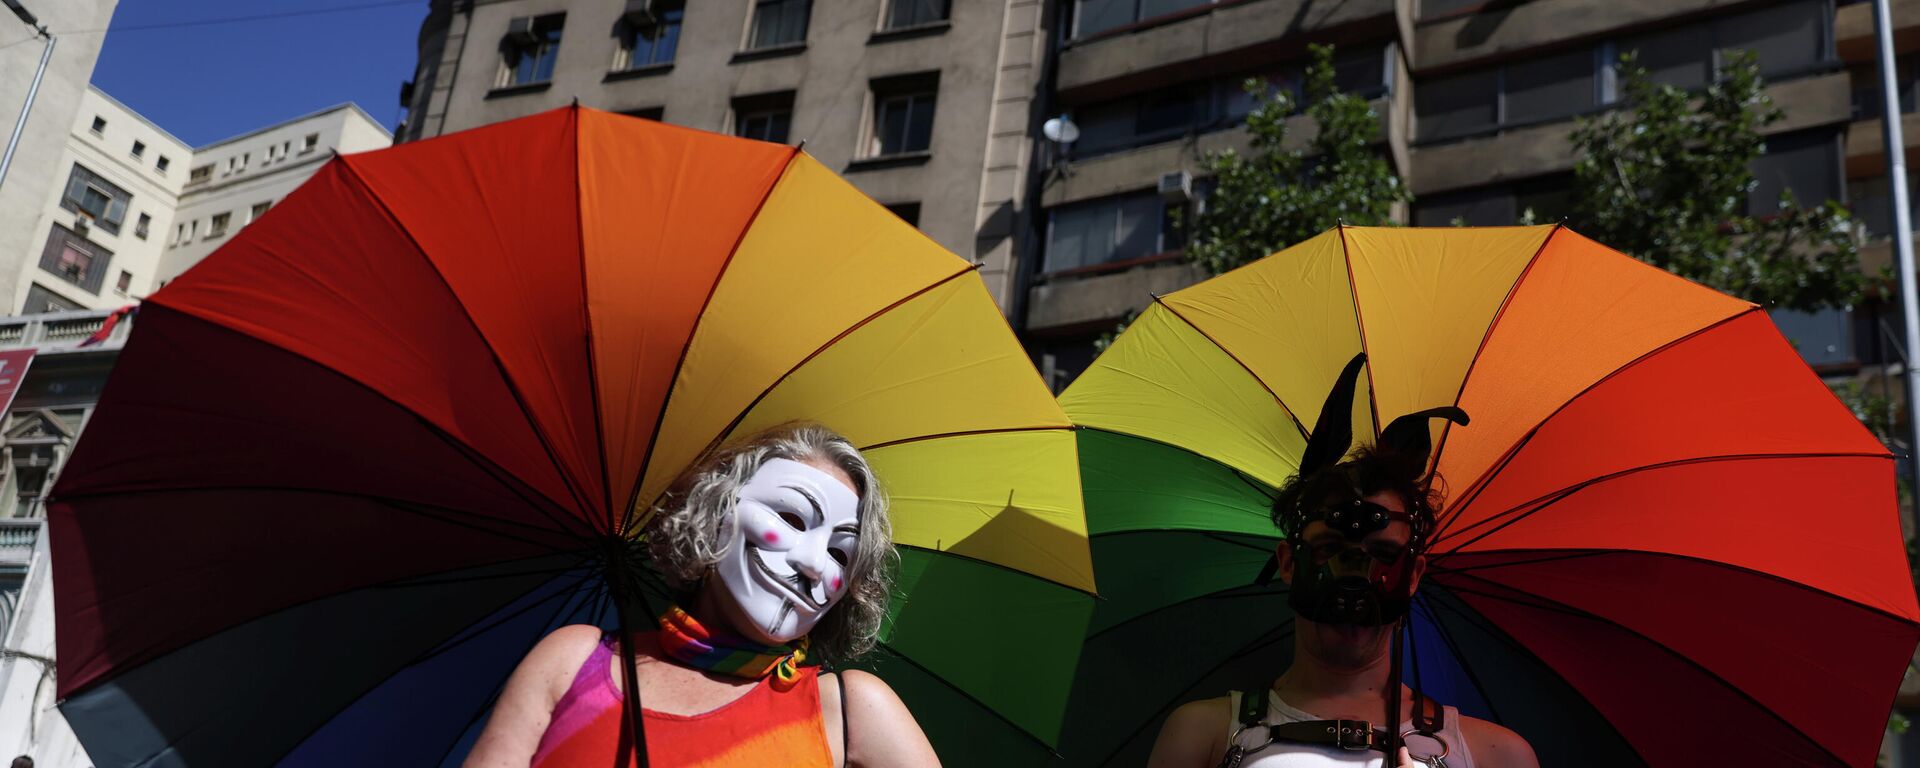 Şili başkenti Santiago'da LGBT+ hareketinin Onur (Pride) Yürüyüşü - Sputnik Türkiye, 1920, 17.11.2021